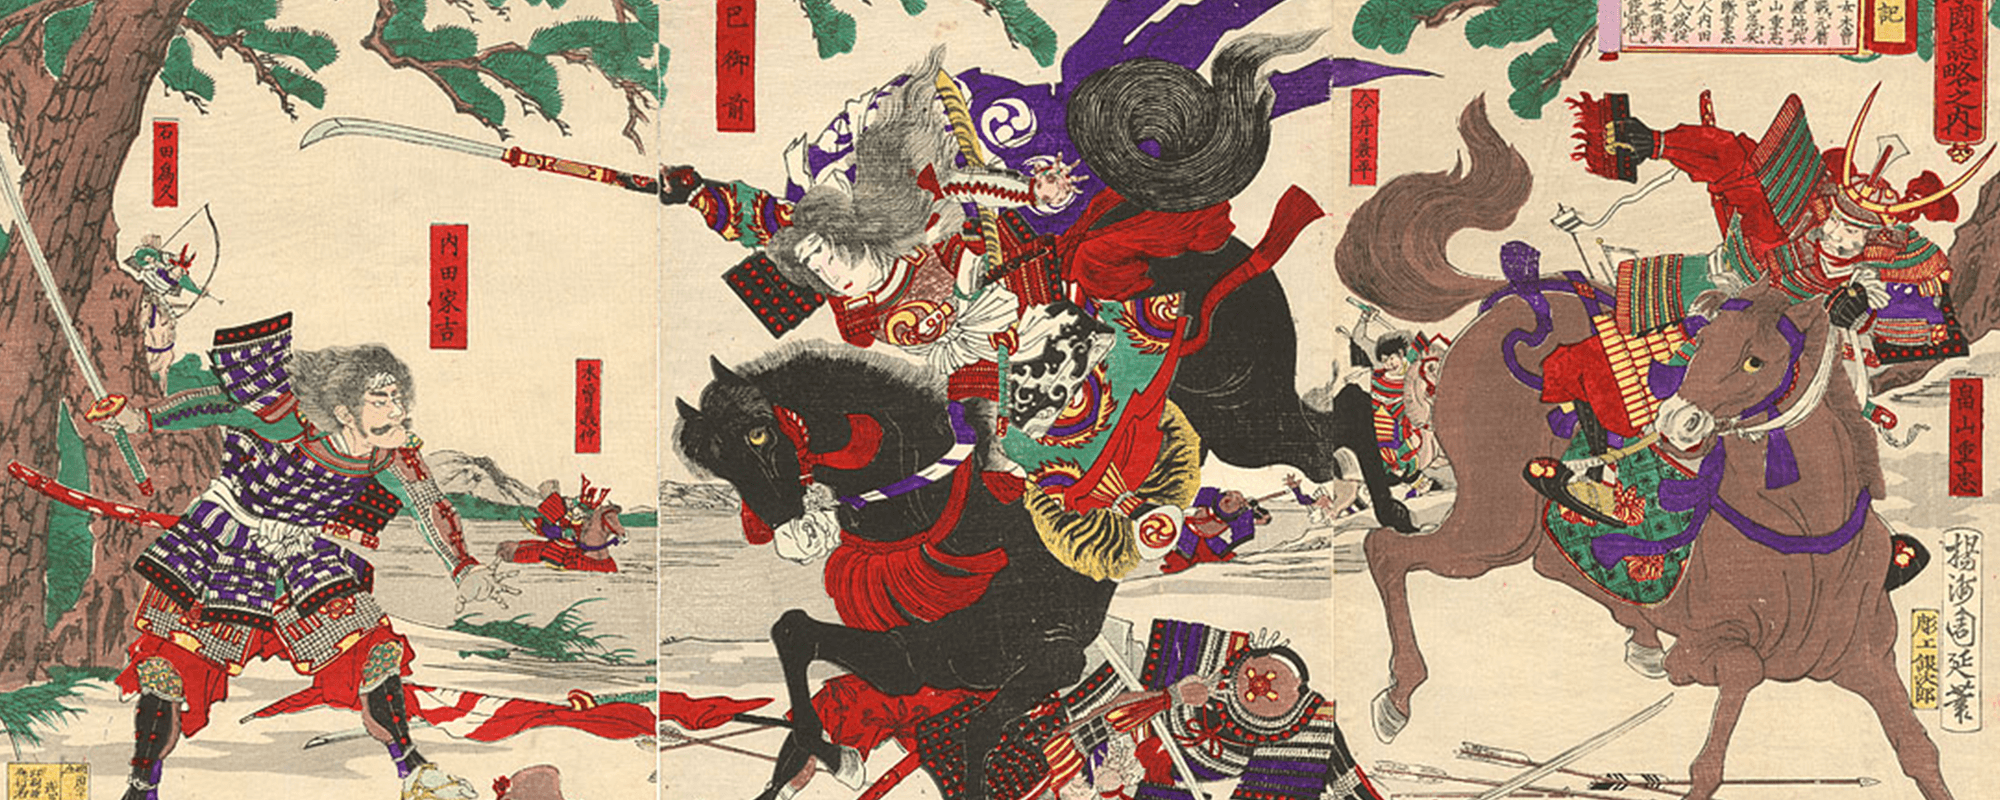 Tomoe Gozen: The Female Samurai That Thousands Feared